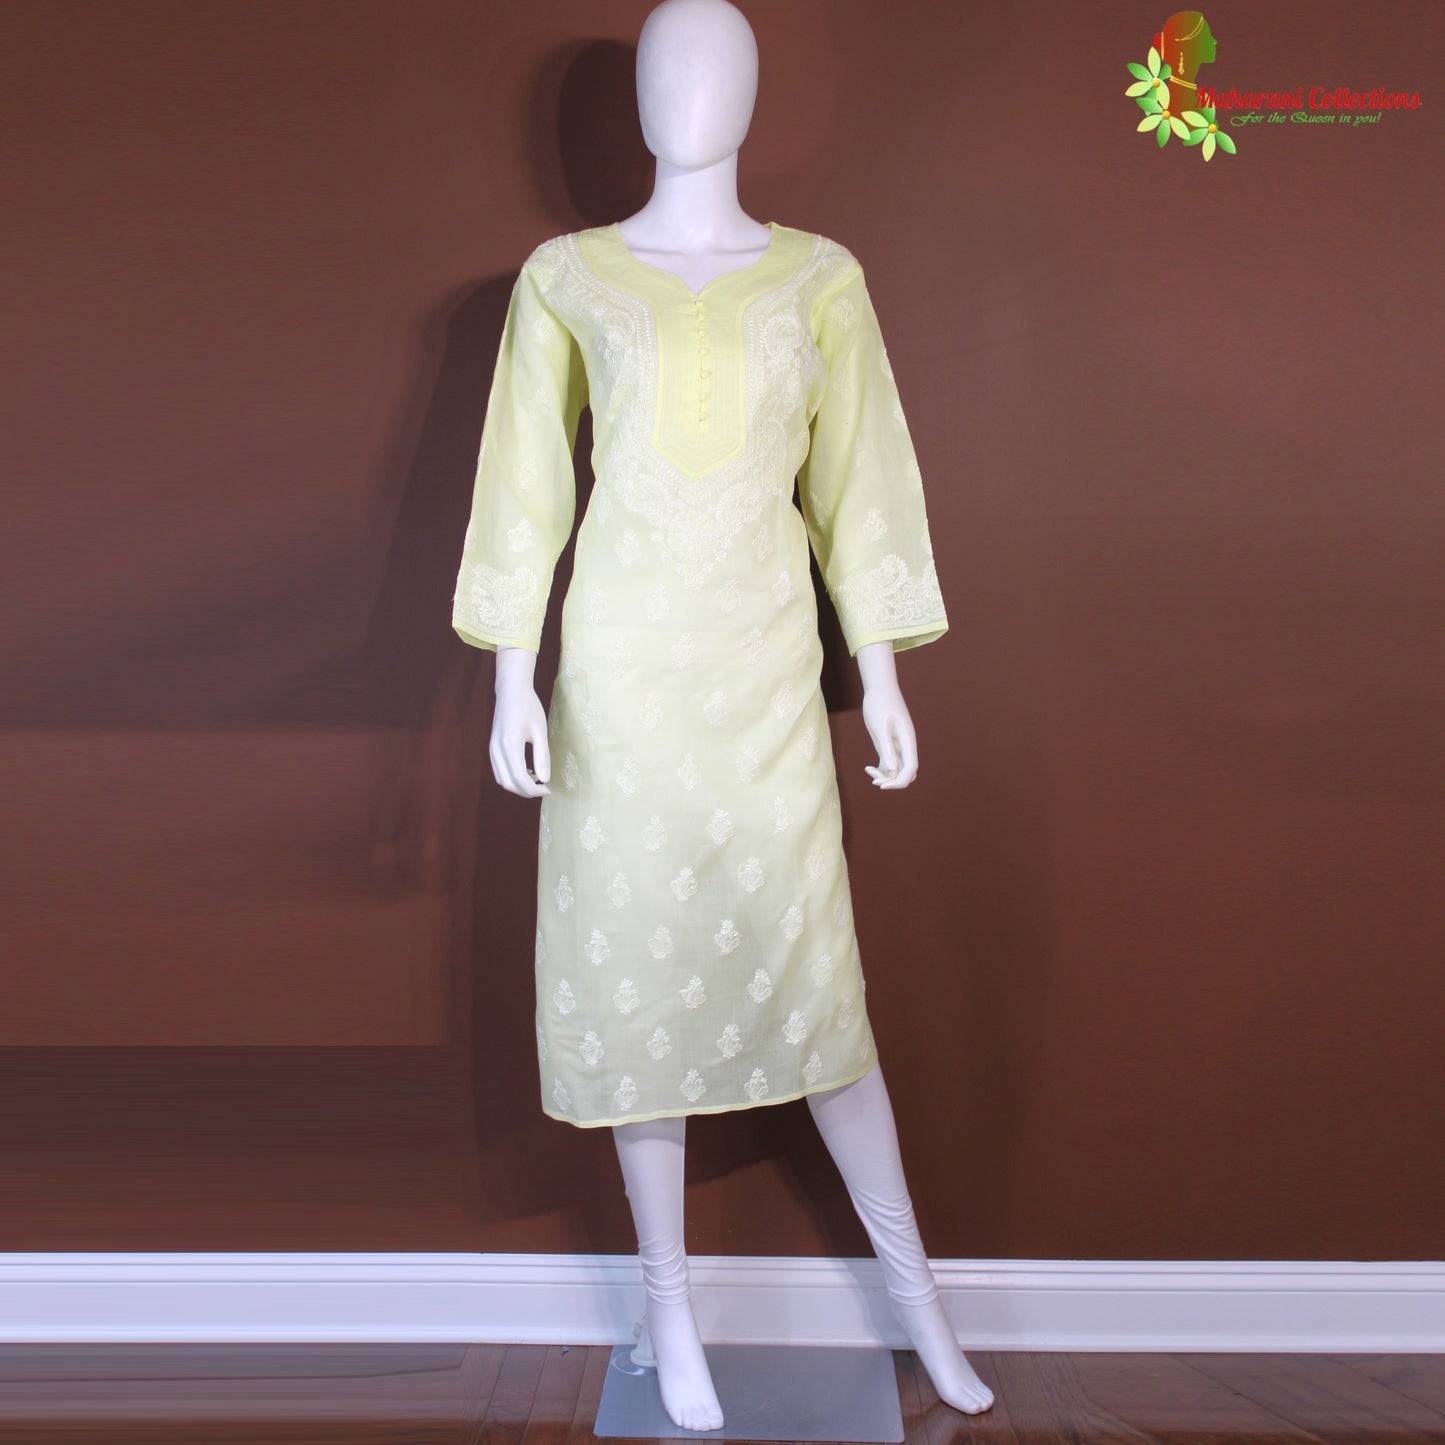 Maharani's Lucknowi Chikankari Pant Suit - Lemon Yellow (L) - Cotton